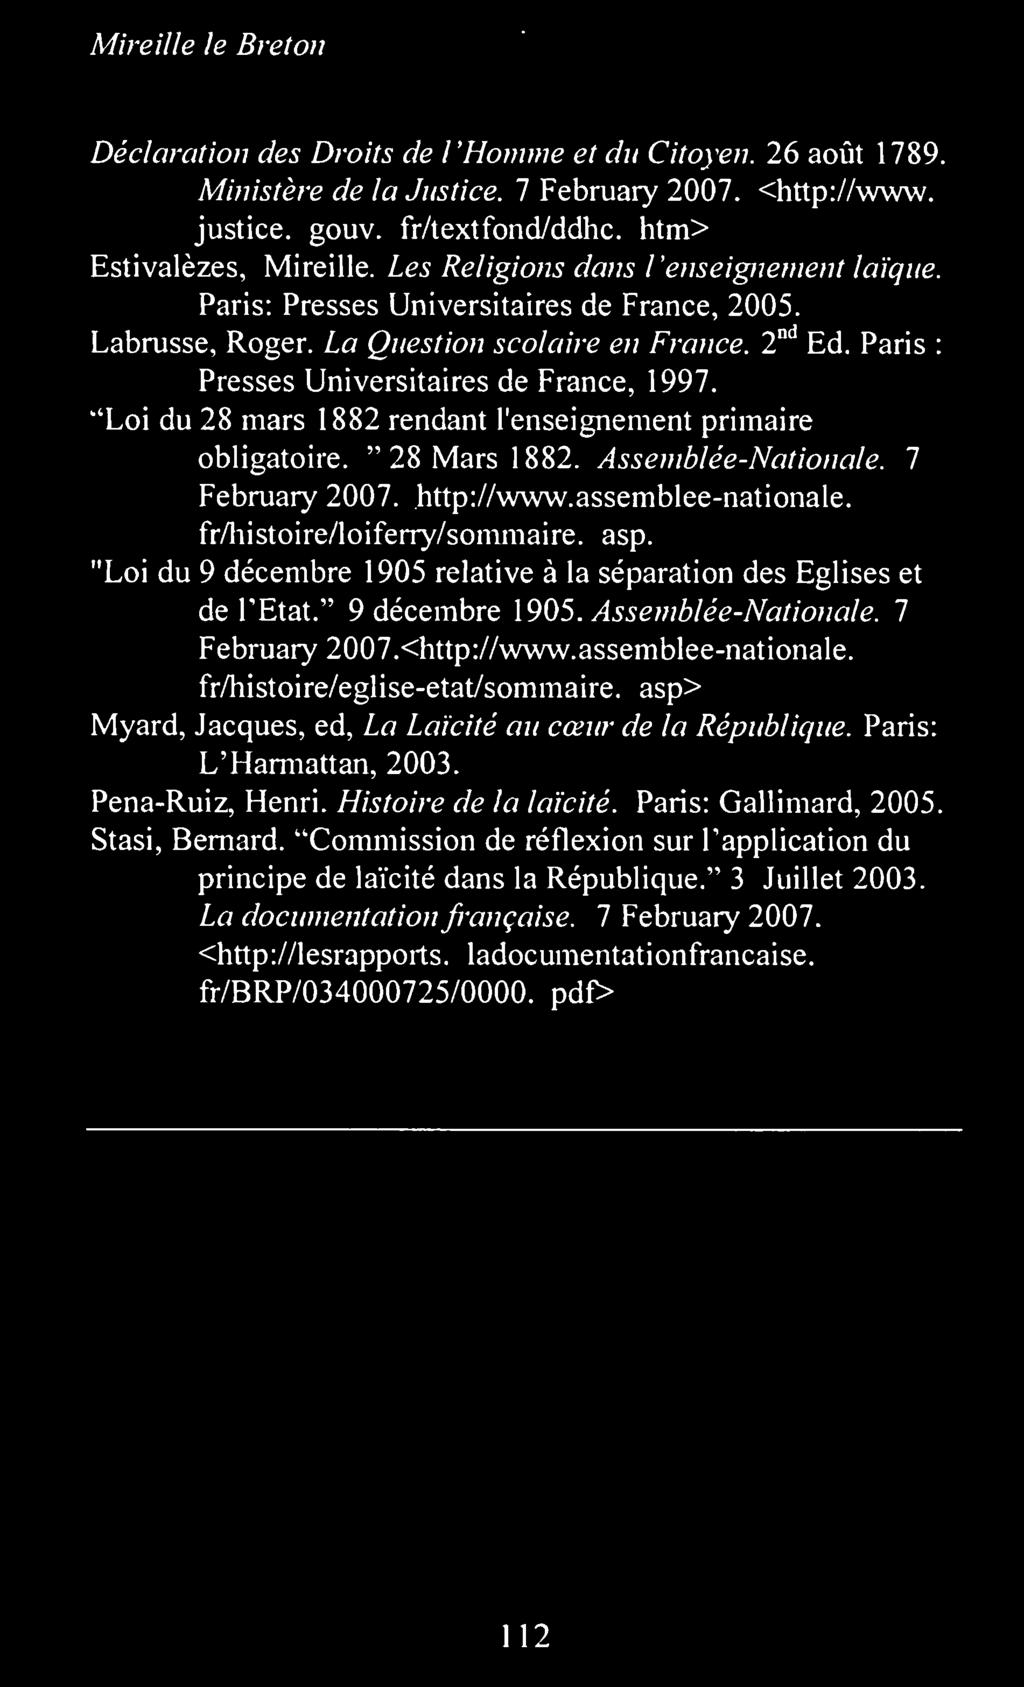 7 February 2007.<http://www.assemblee-nationale. fr/histoire/eglise-etat/sommaire. asp> Myard, Jacques, ed, La Laicite au cceur de la Republique. Paris: L'Harmattan, 2003. Pena-Ruiz, Henri.